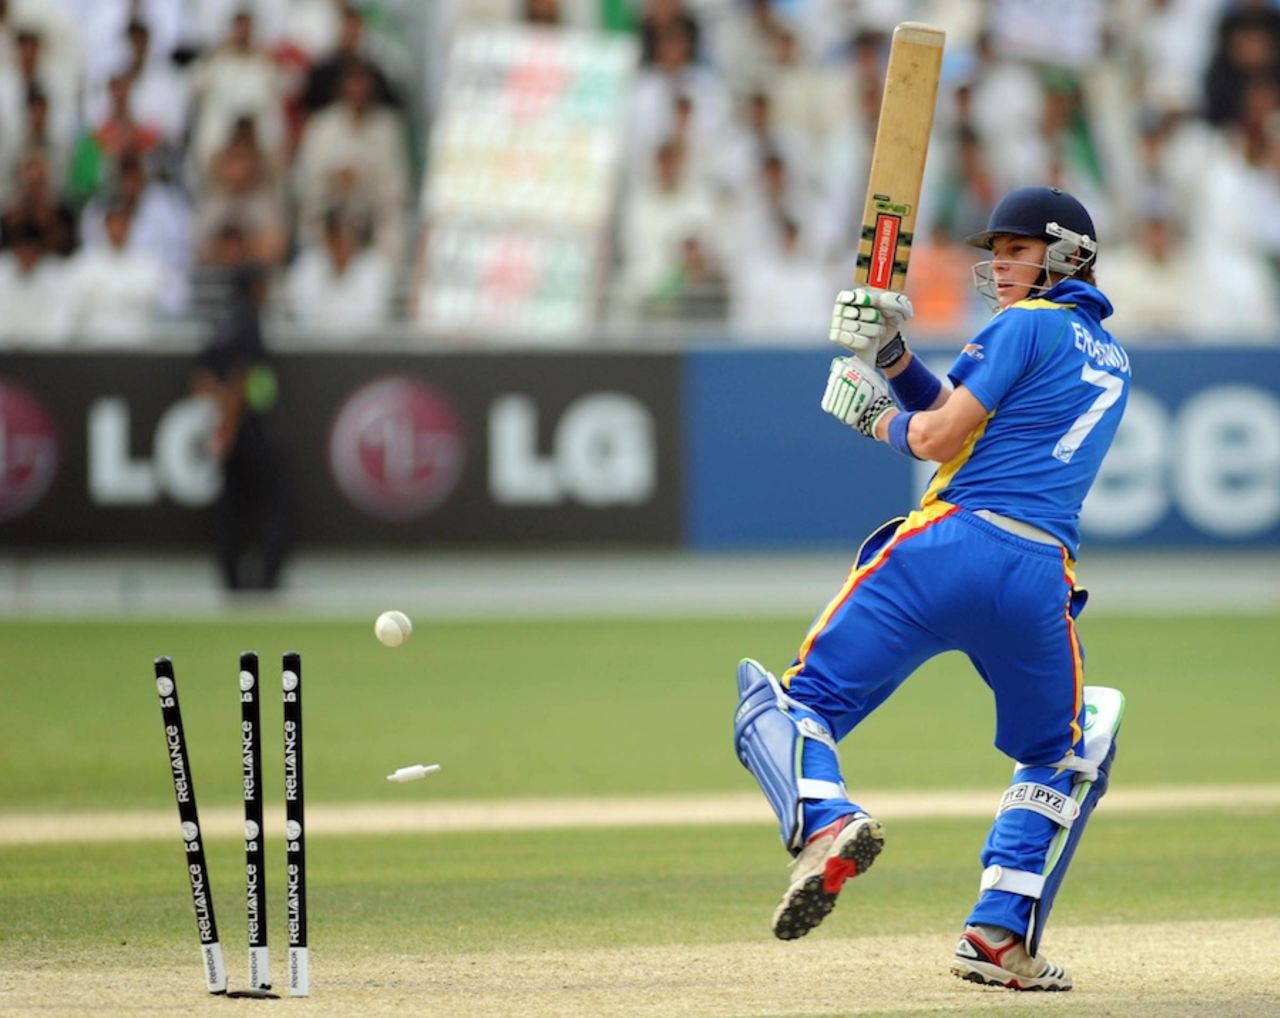 Gerhard Erasmus was bowled by Aftab Alam, Afghanistan v Namibia, ICC World Twenty20 Qualifier, Dubai, March 22, 2012